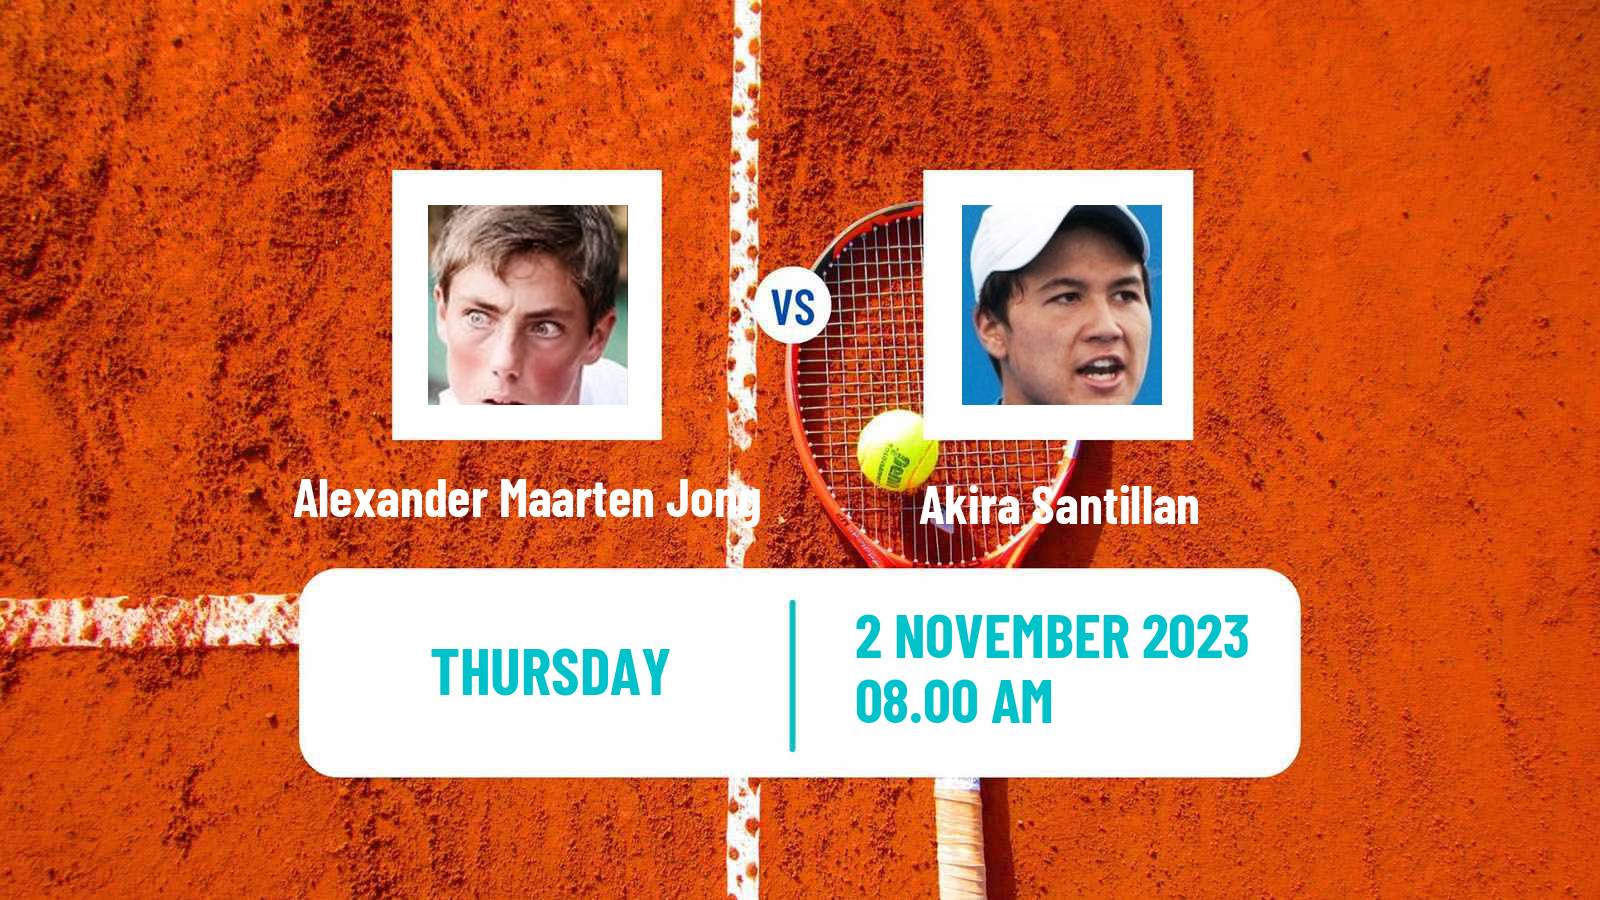 Tennis ITF M25 Sunderland 2 Men Alexander Maarten Jong - Akira Santillan